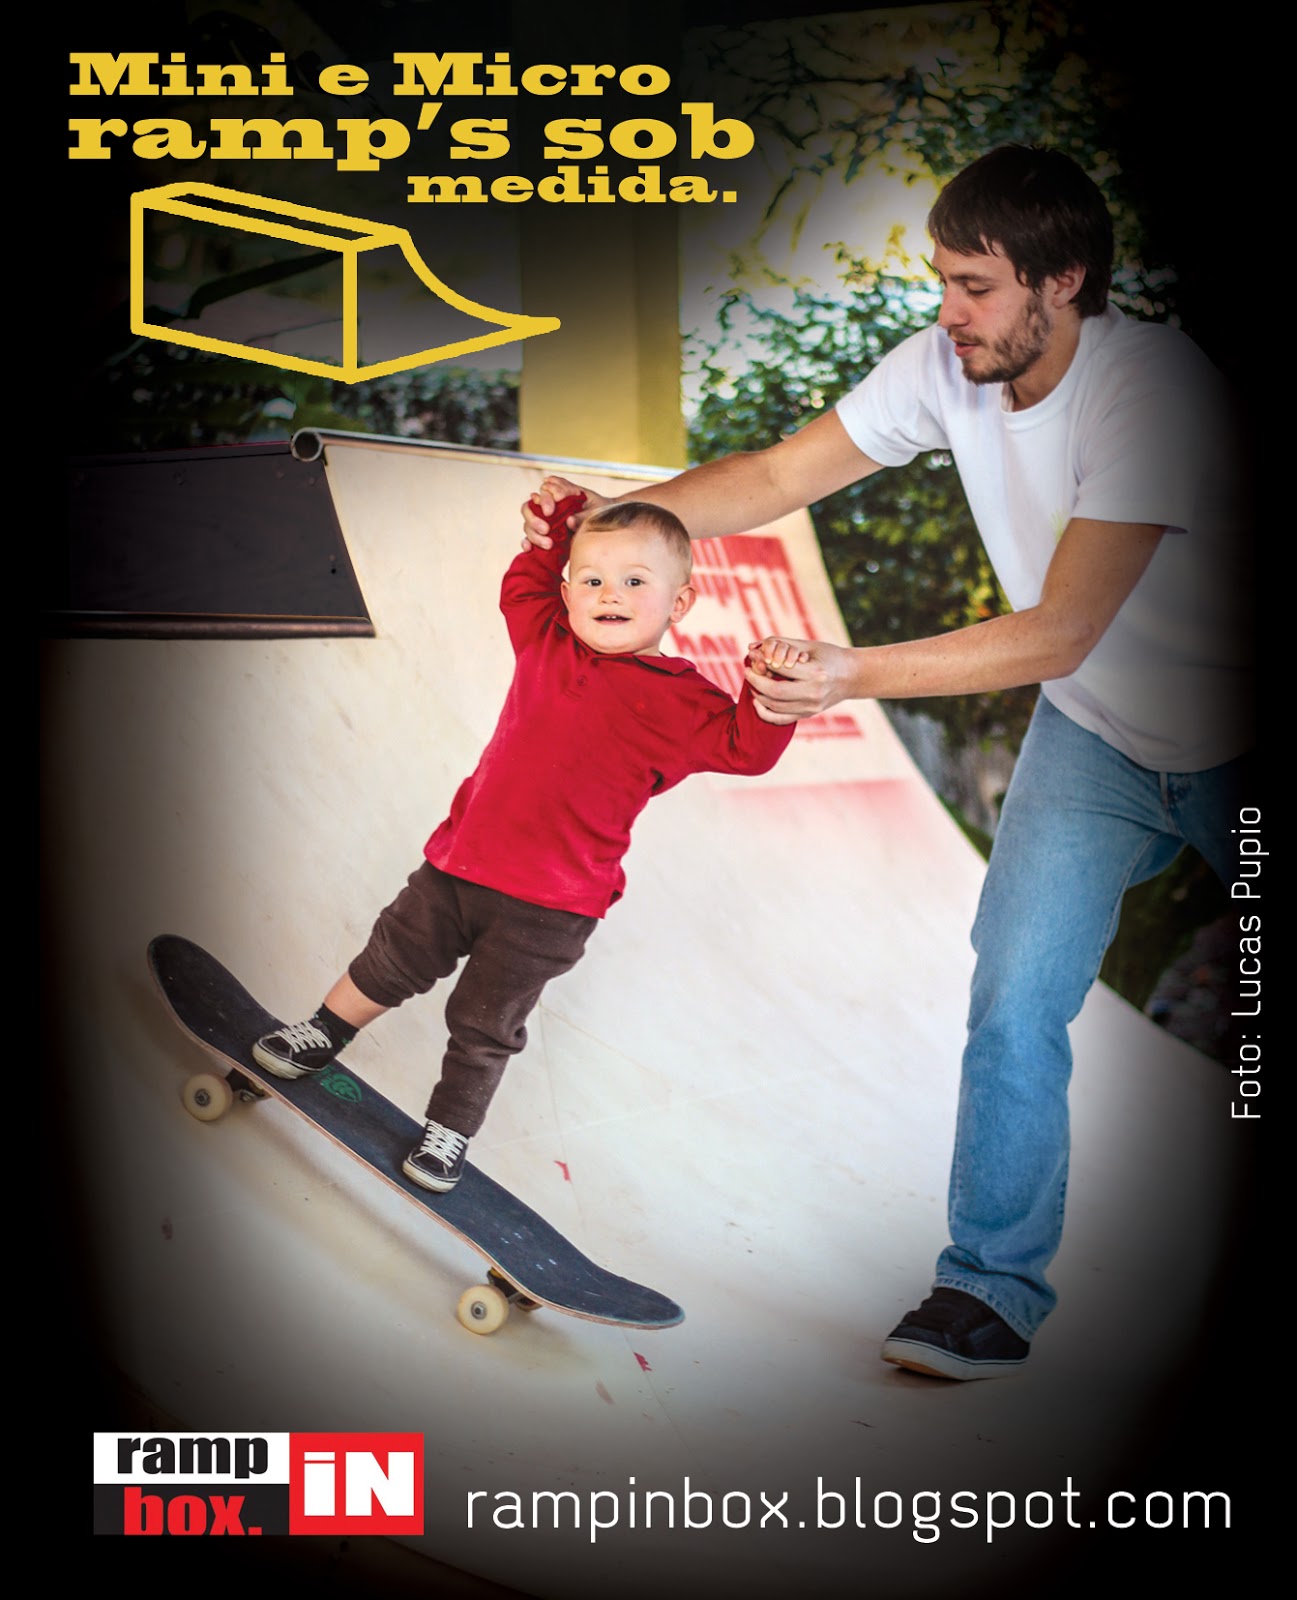 Campanha R.I.B. Fev. 2013 - Revista Tribo Skate - Edição 208